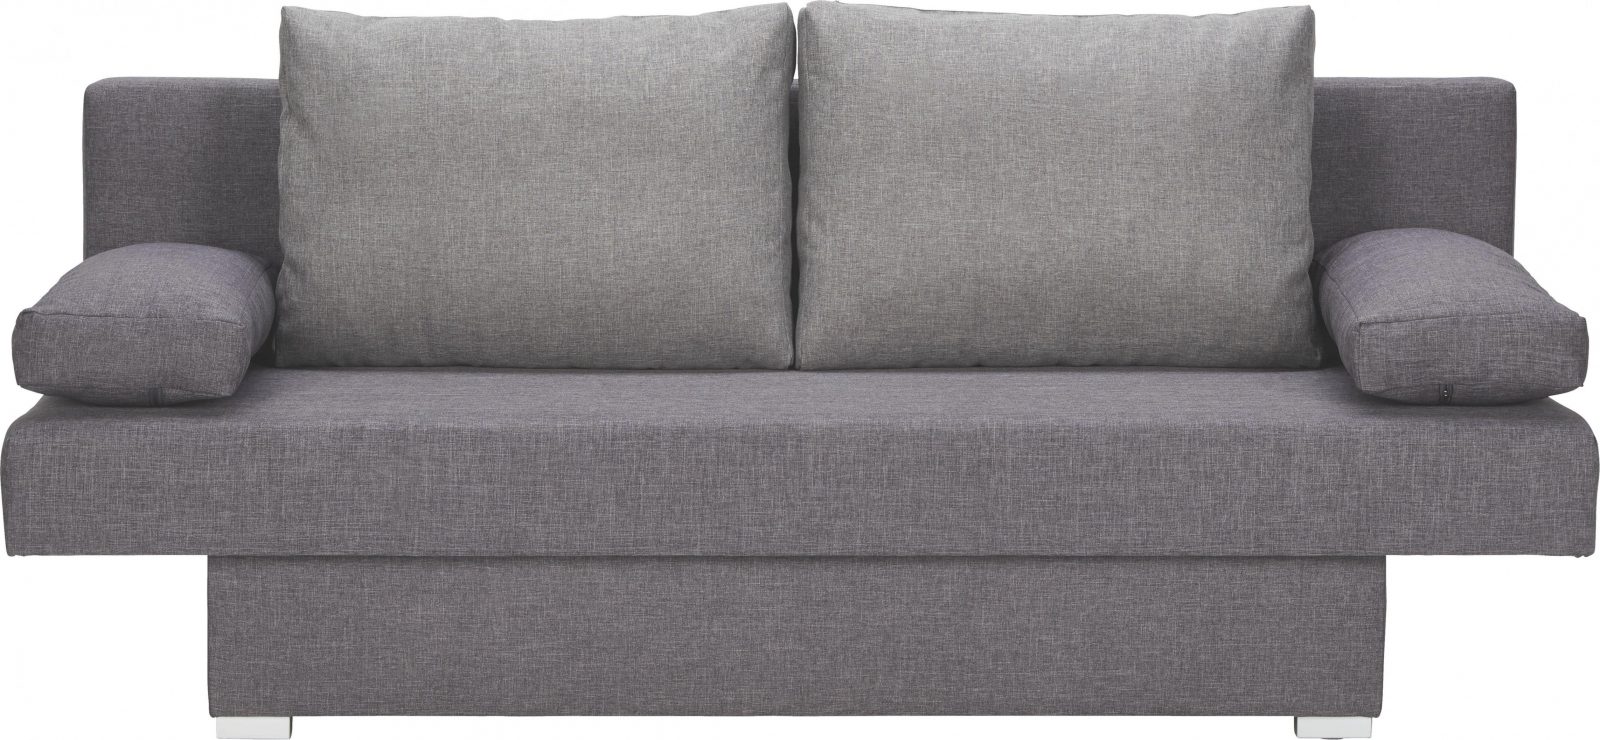 Schlafsofas Online Kaufen Xxxlutz von Couch Zweisitzer Zum Ausziehen Bild